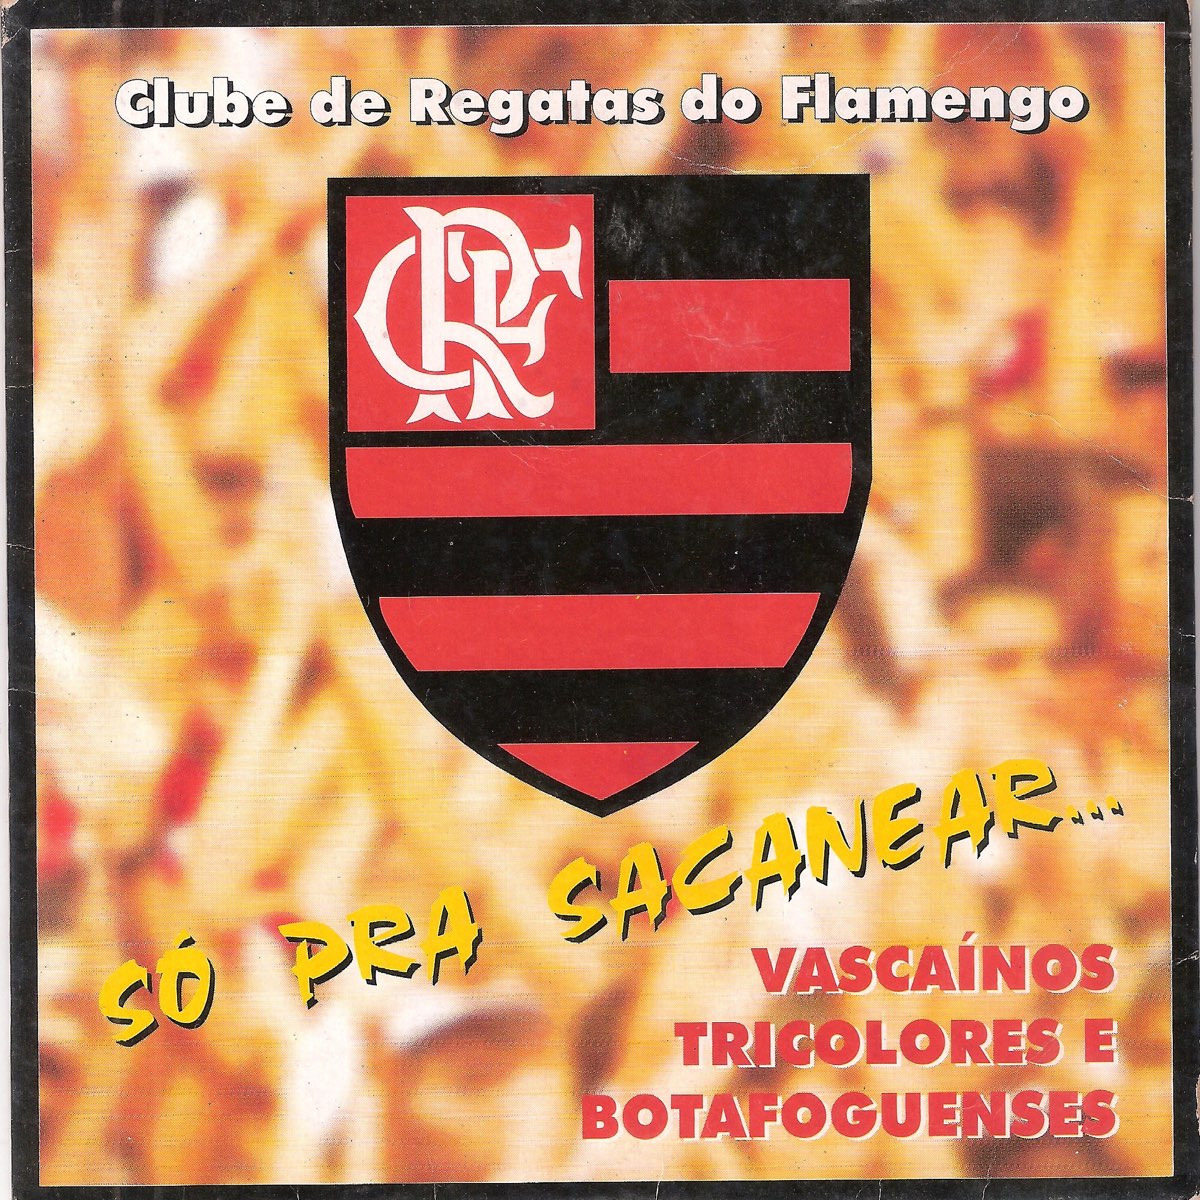 CHEGOU O QUIZ DA ABC DA - Clube de Regatas do Flamengo